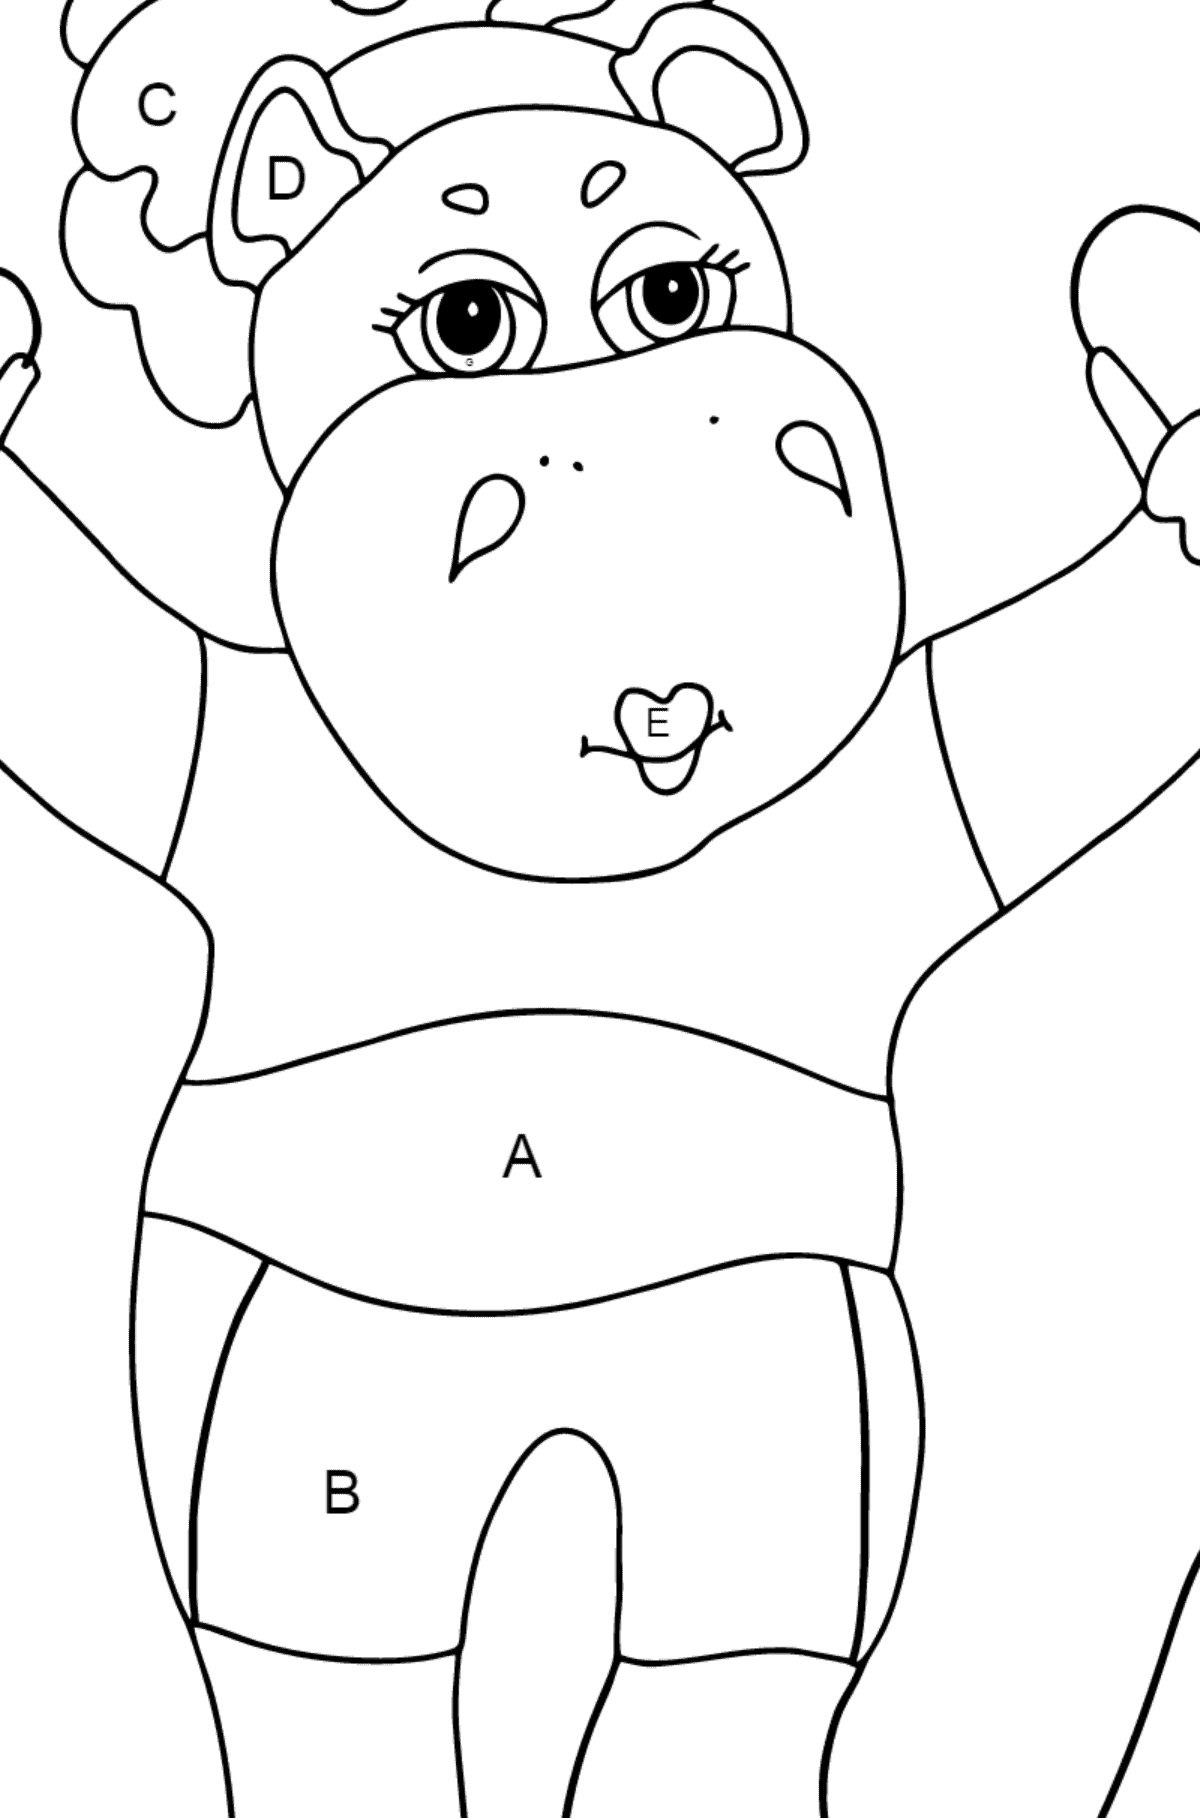 Coloriage Hippopotame joyeux - Coloriage par Lettres pour les Enfants